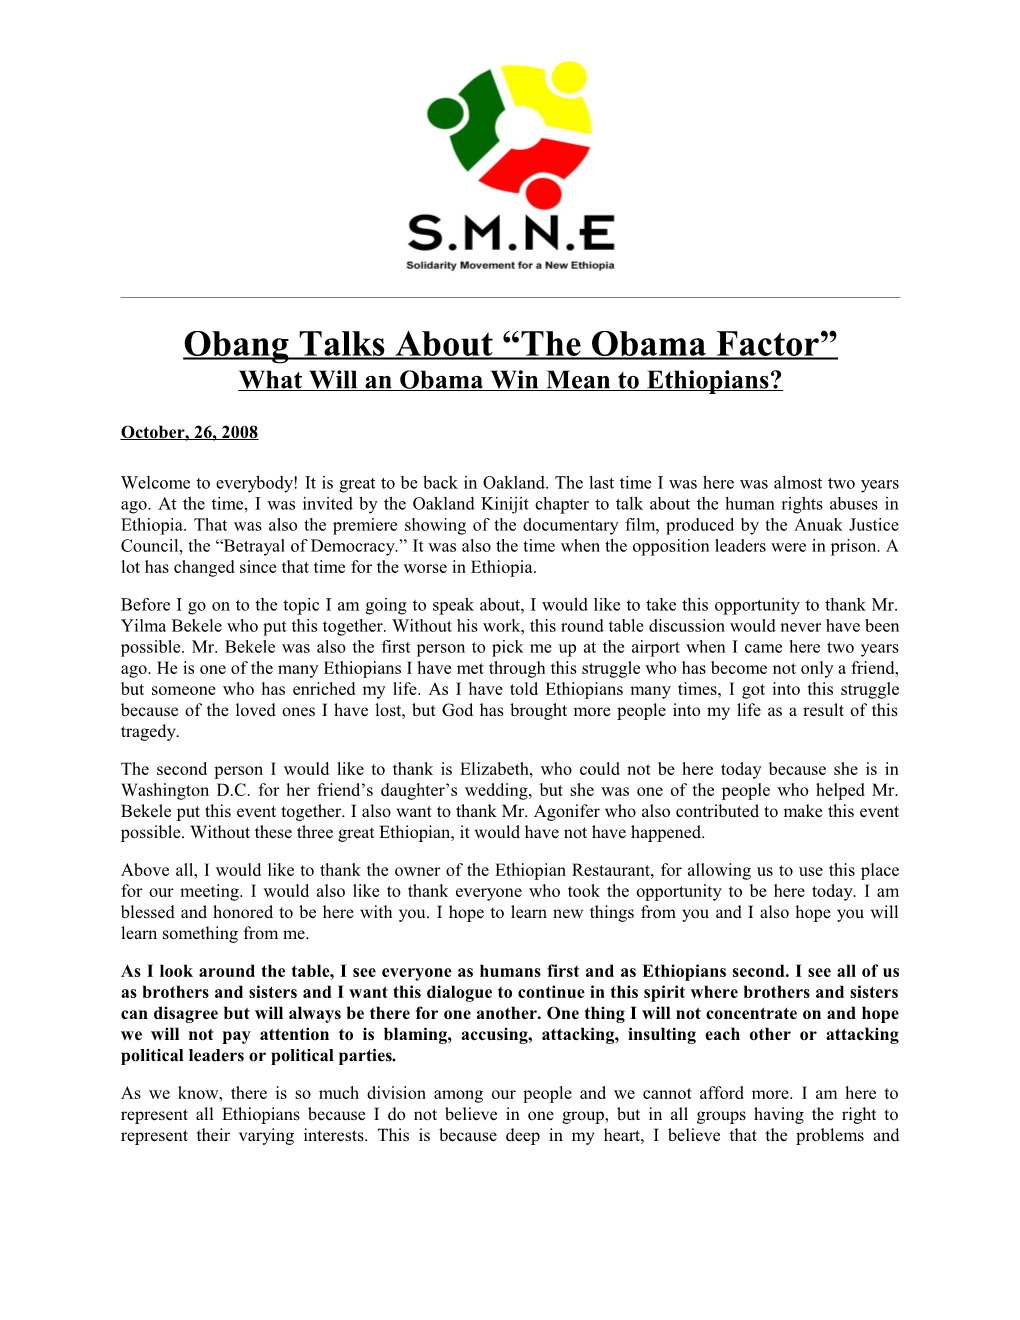 Obang Talks About the Obama Factor